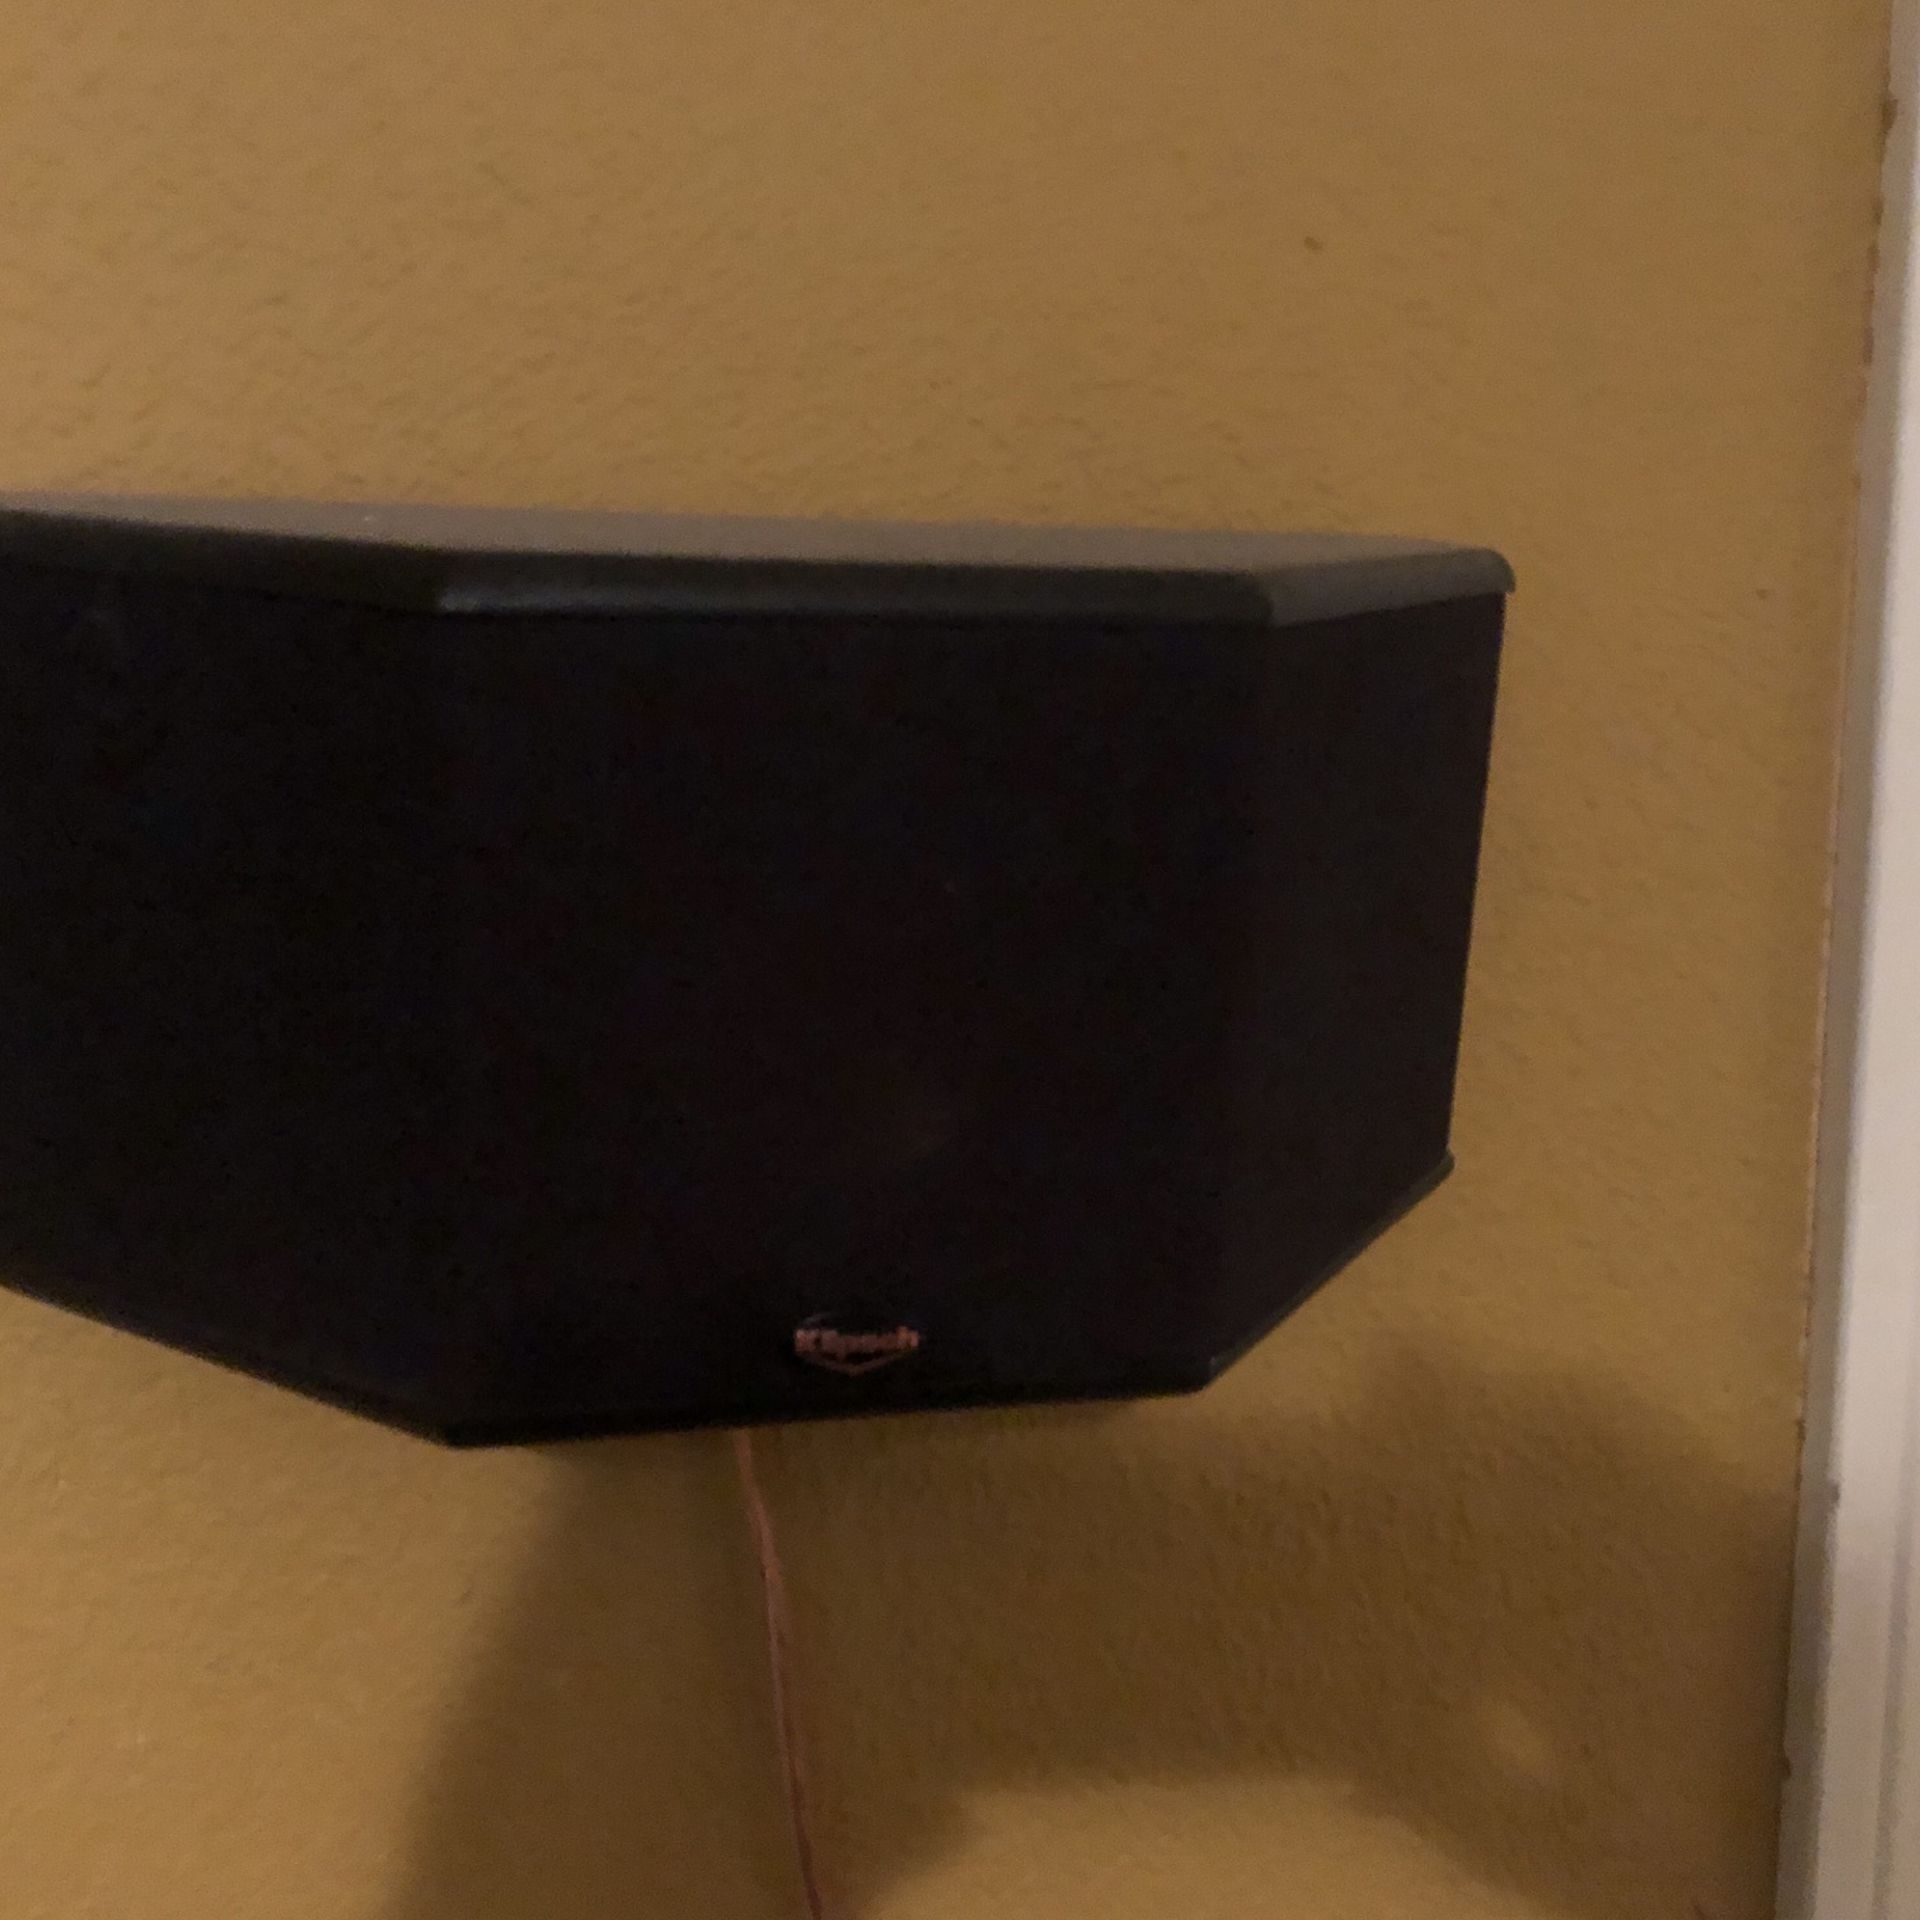 Klipsch  Speakers    RS-10   $60  per Speaker 